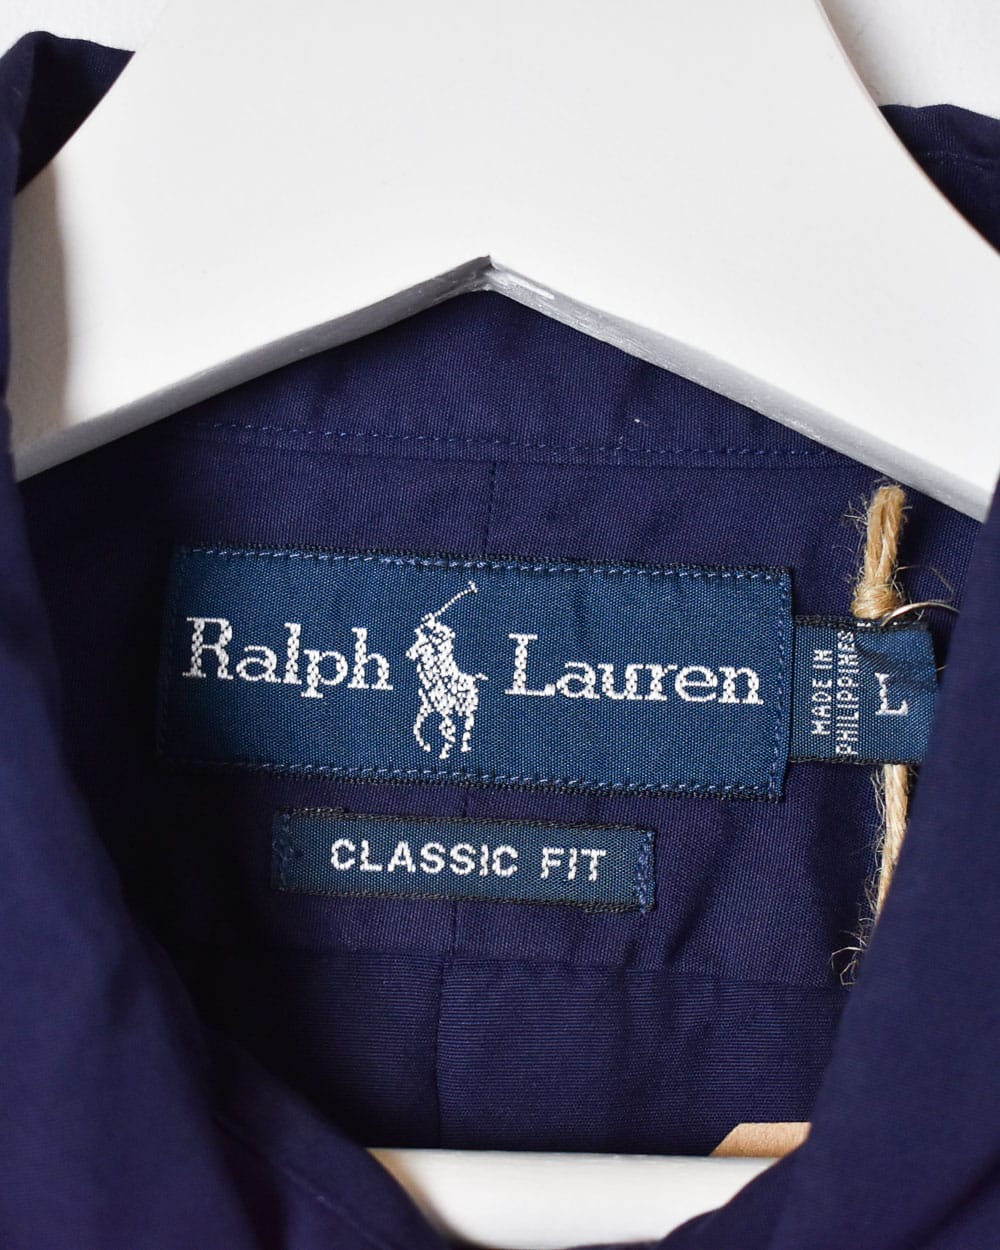 Navy Polo Ralph Lauren Shirt - Large